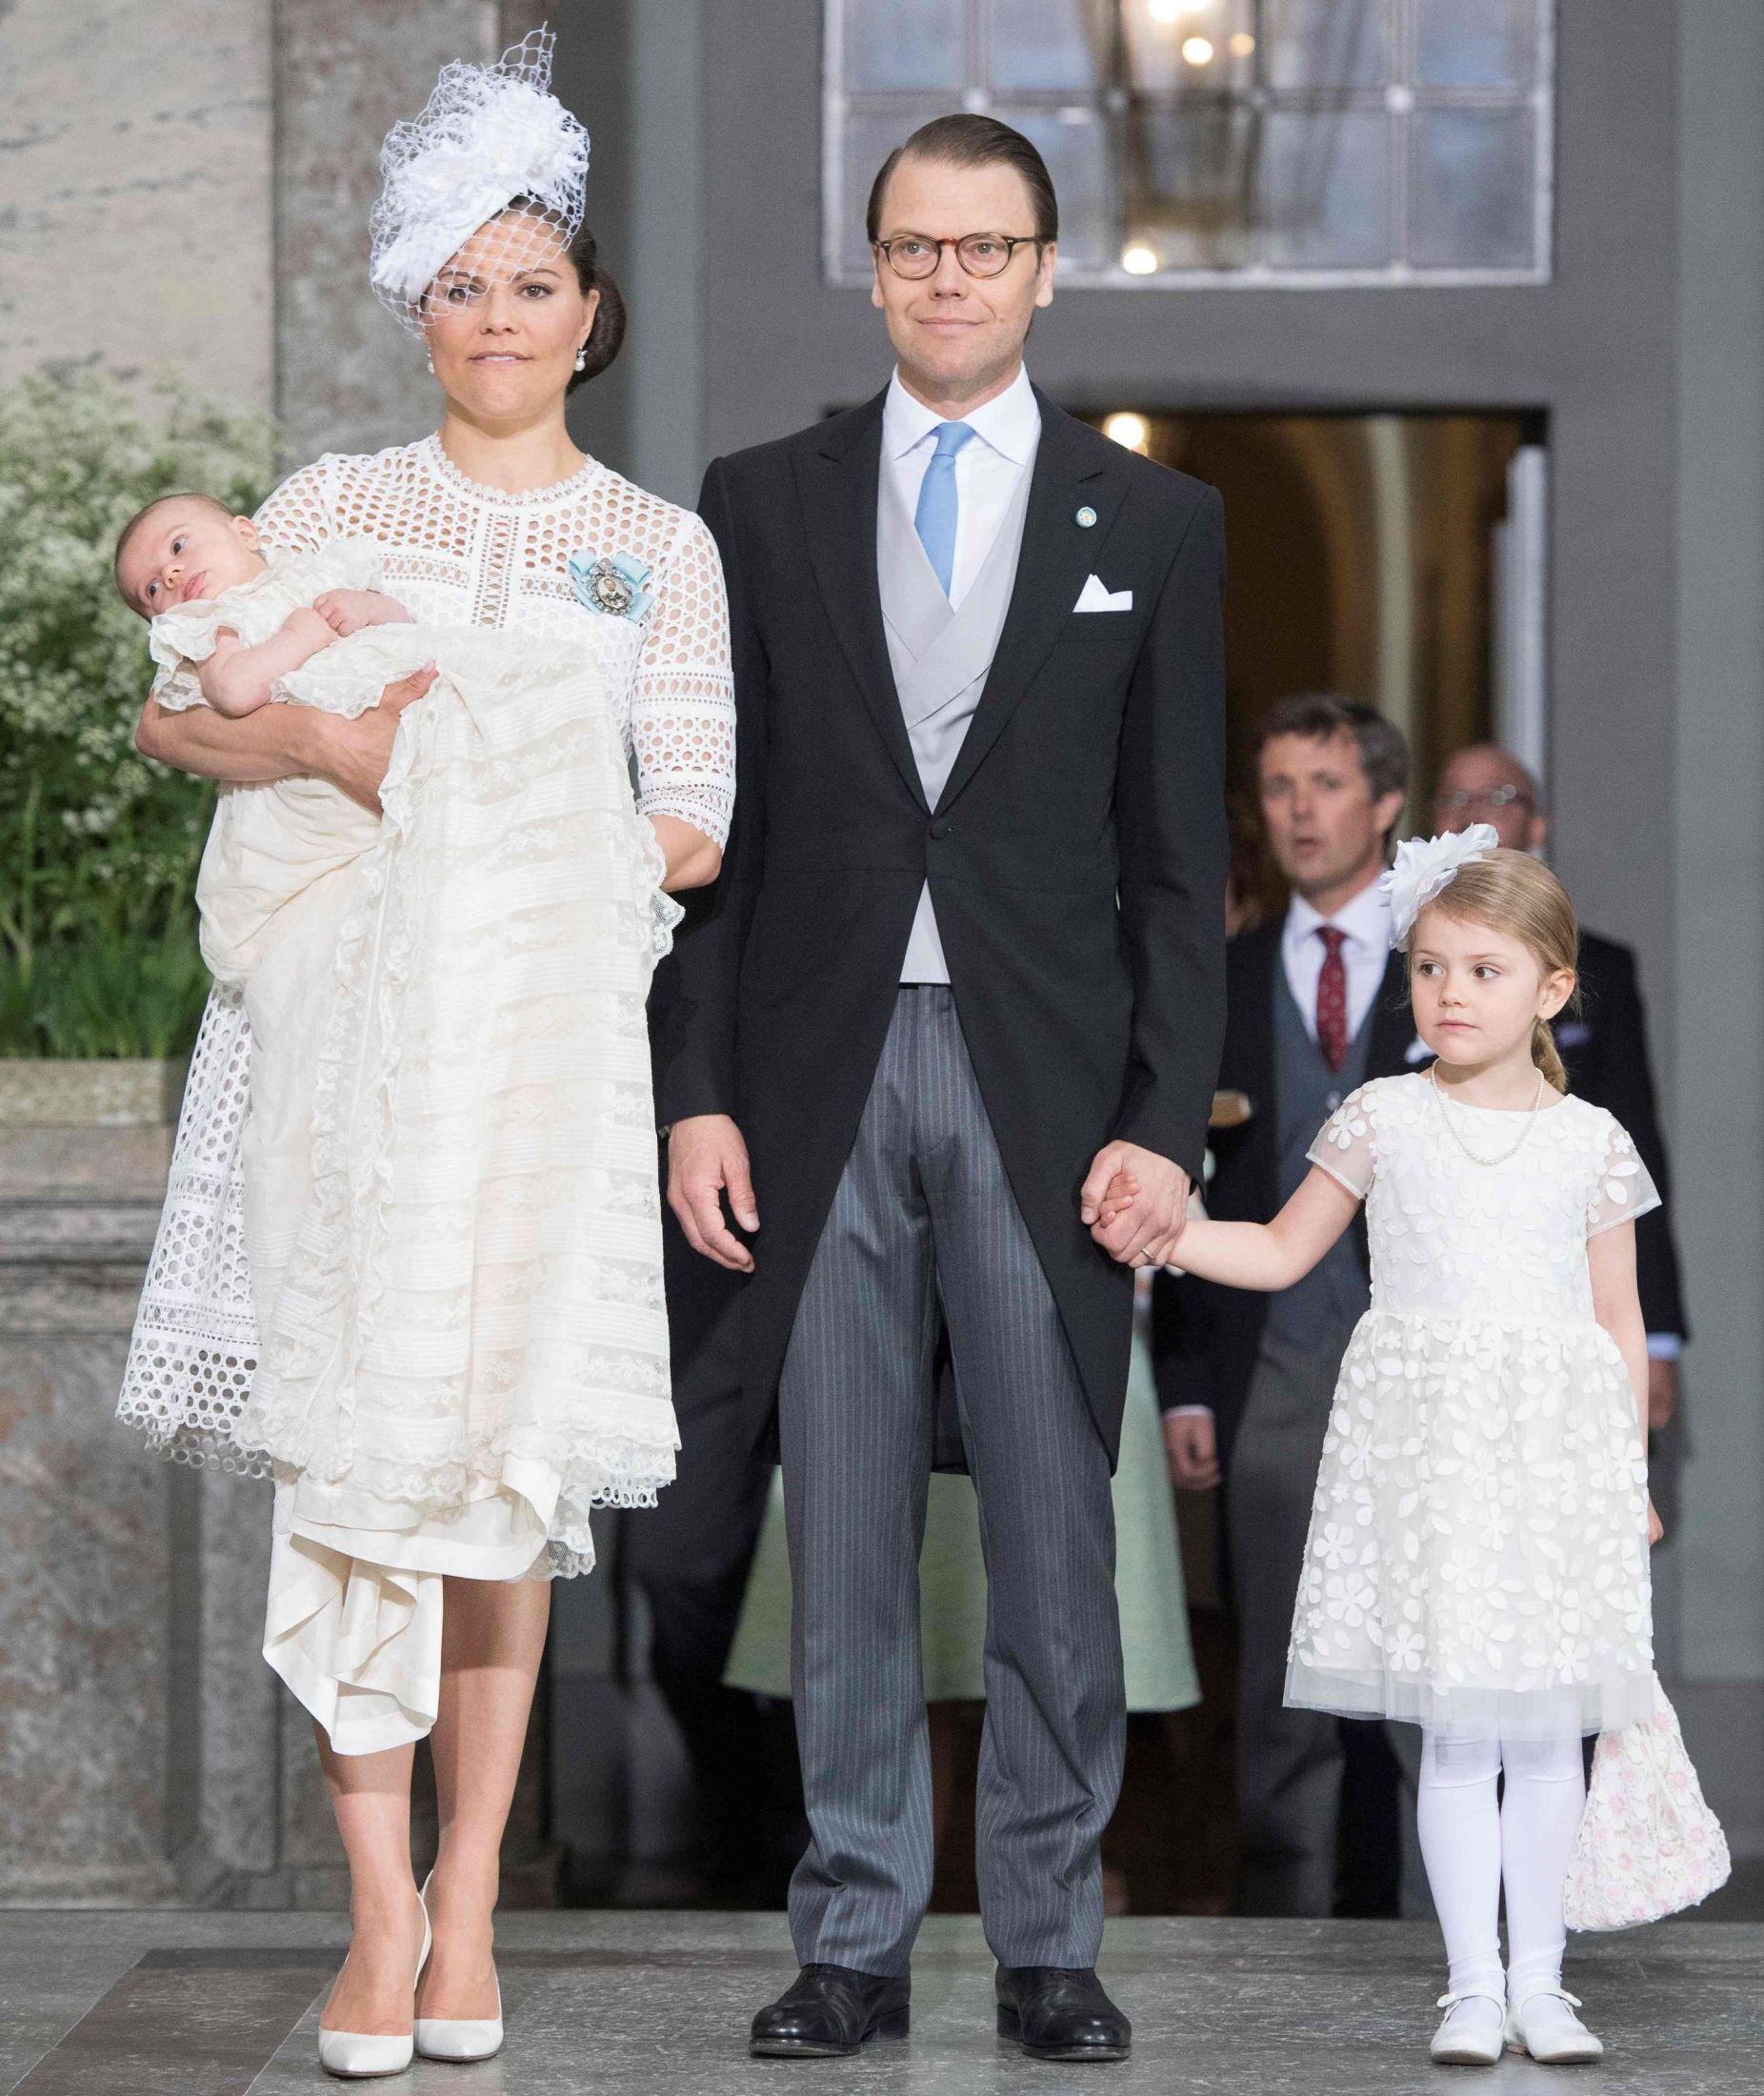 MATCHET: Kronprinsesse Victoriaog prinsesse Estelle matchet hverandre i hvitt. På armen ligger selvsagt lille prins Oscar, mens pappa prins Daniel holder datteren i hånden. Foto: AFP